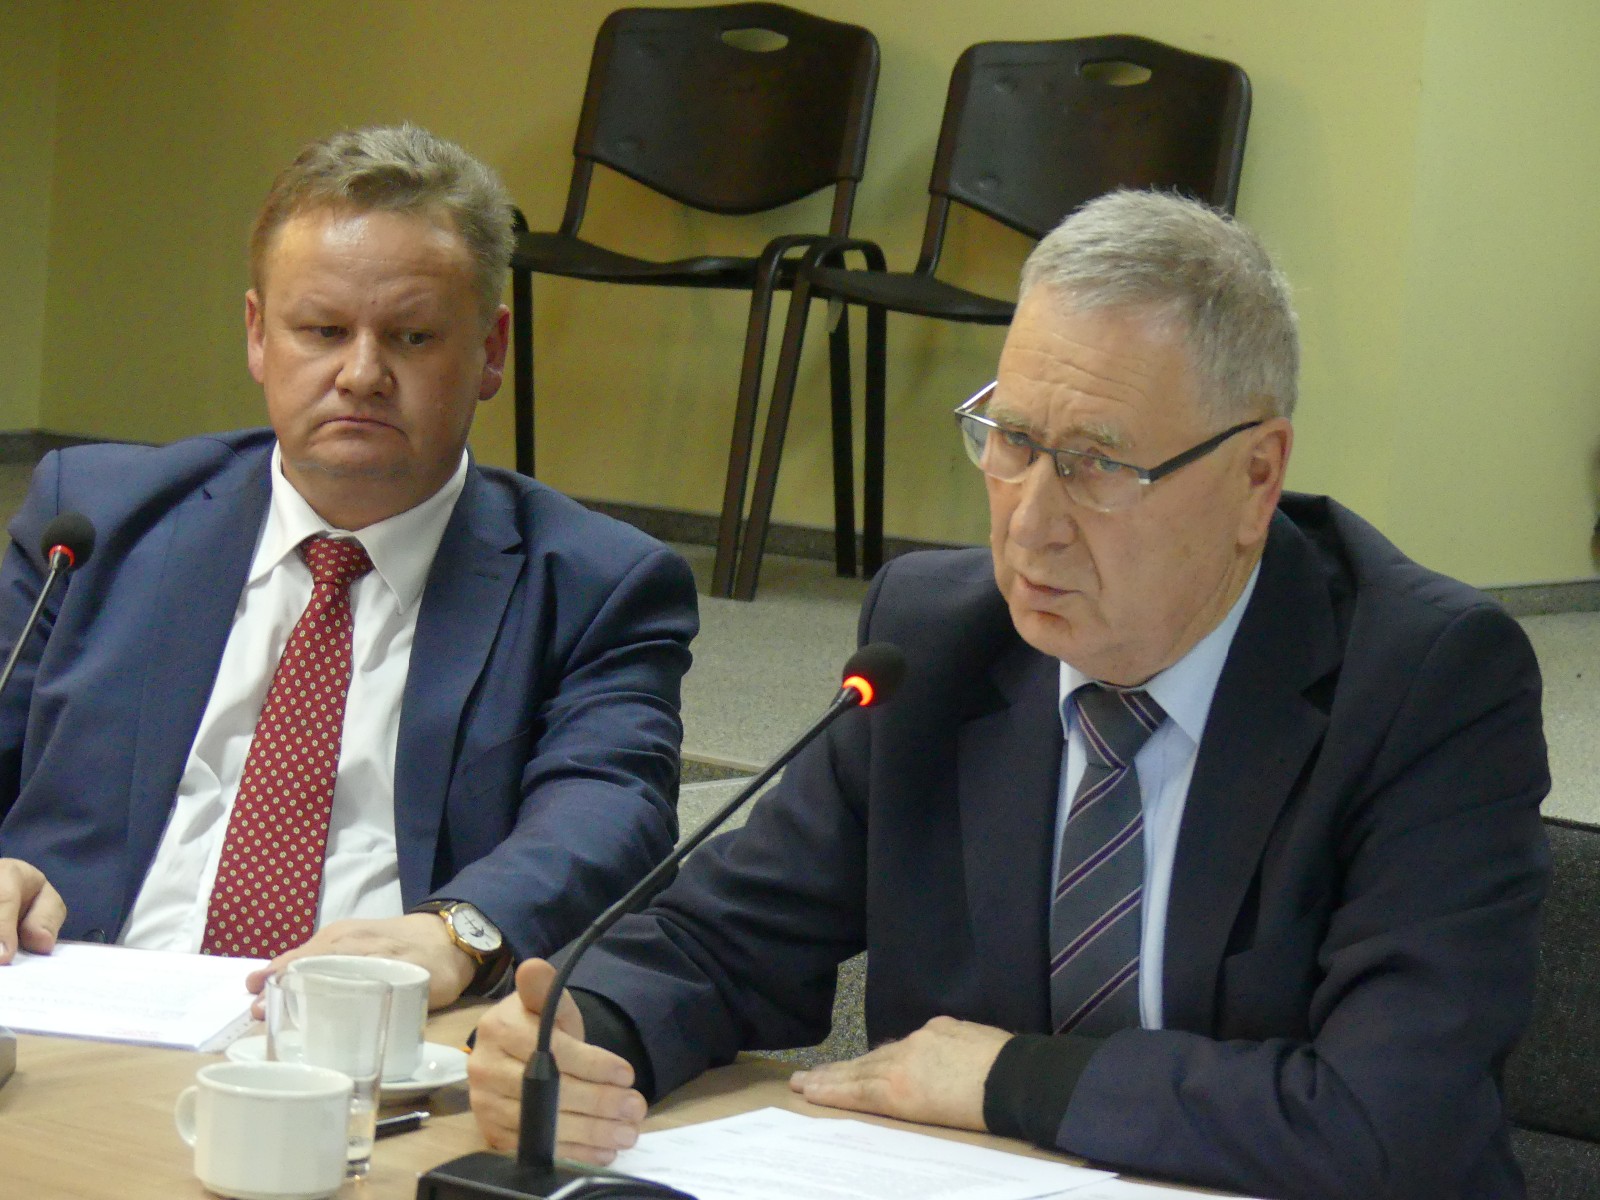 Uchwalono budżet Powiatu Jasielskiego na 2019 rok